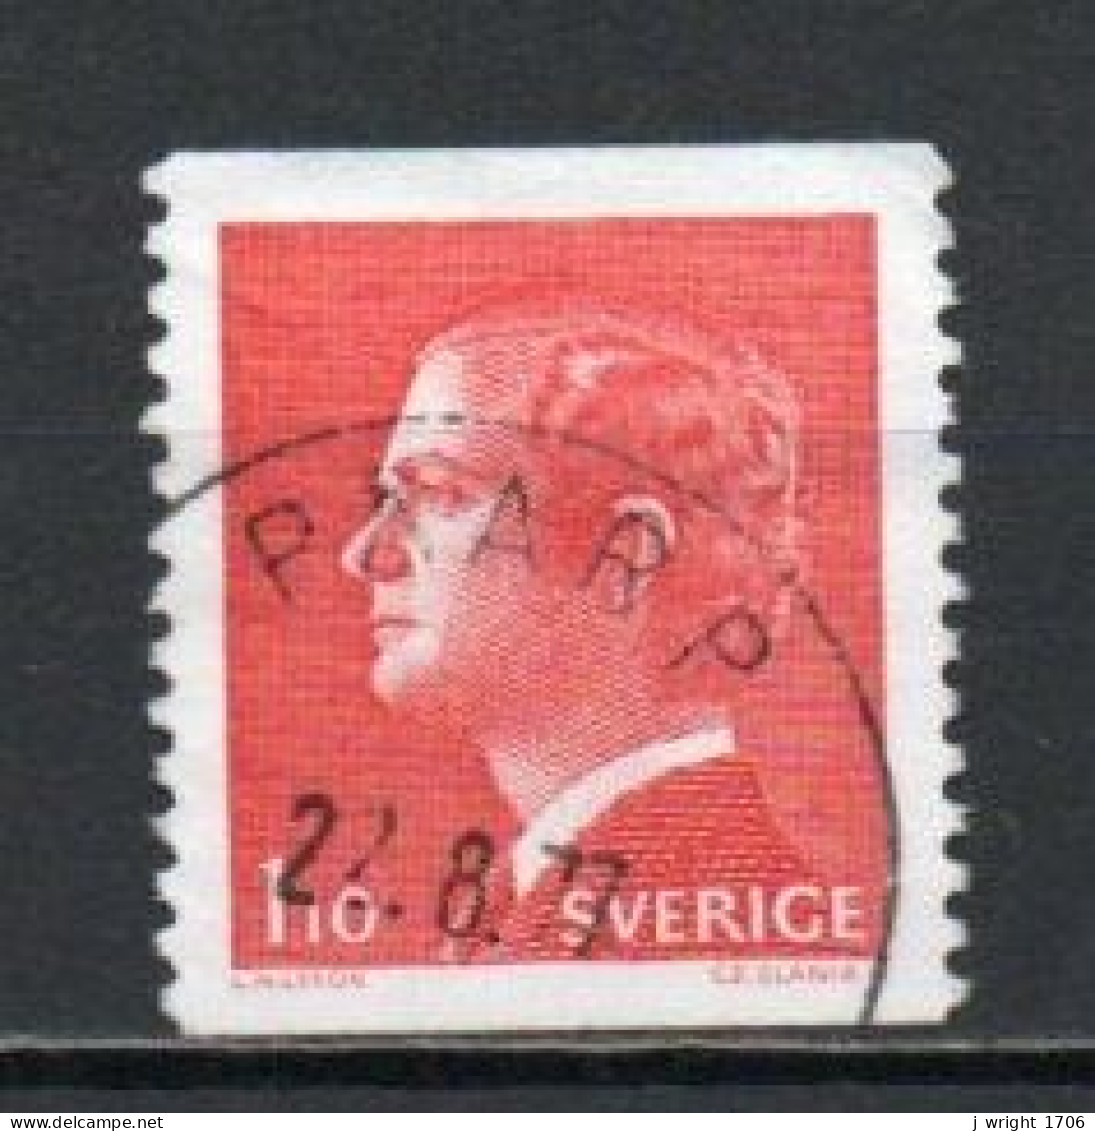 Sweden, 1975, King Carl XVI Gustaf, 1.10kr/Perf 2 Sides, USED - Oblitérés